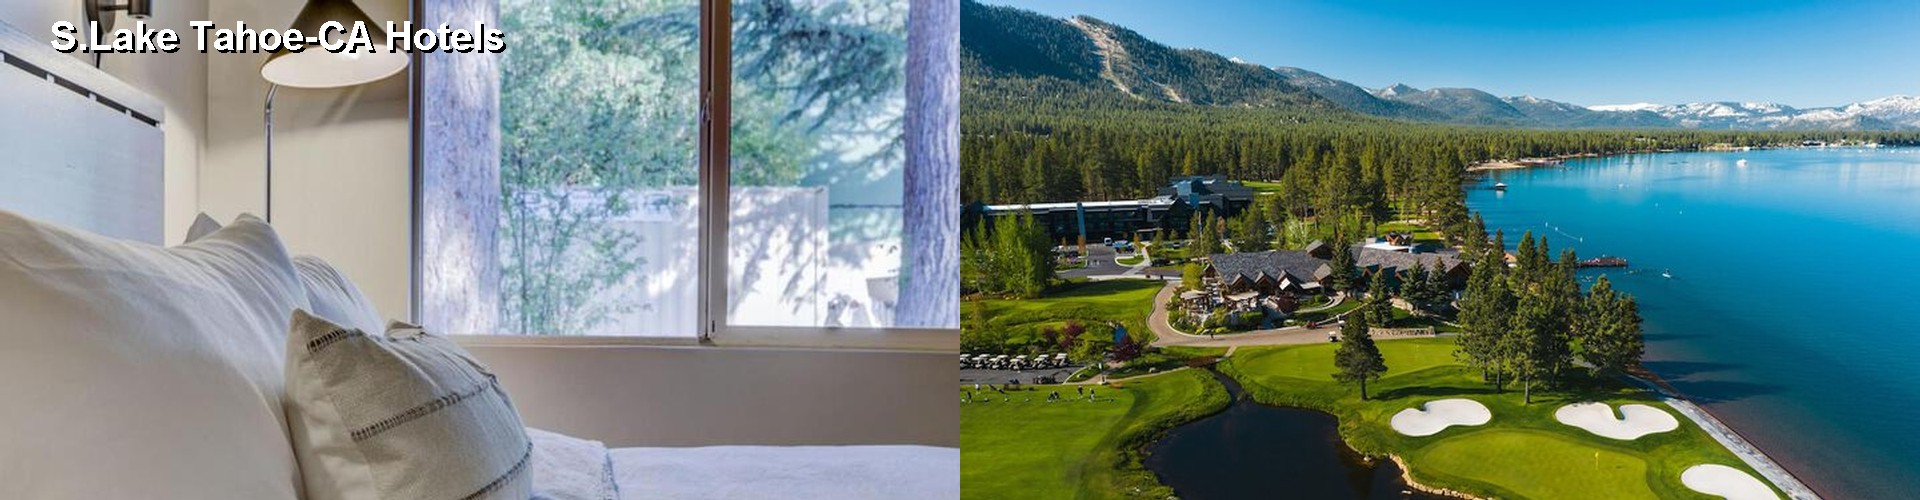 5 Best Hotels near S.Lake Tahoe-CA